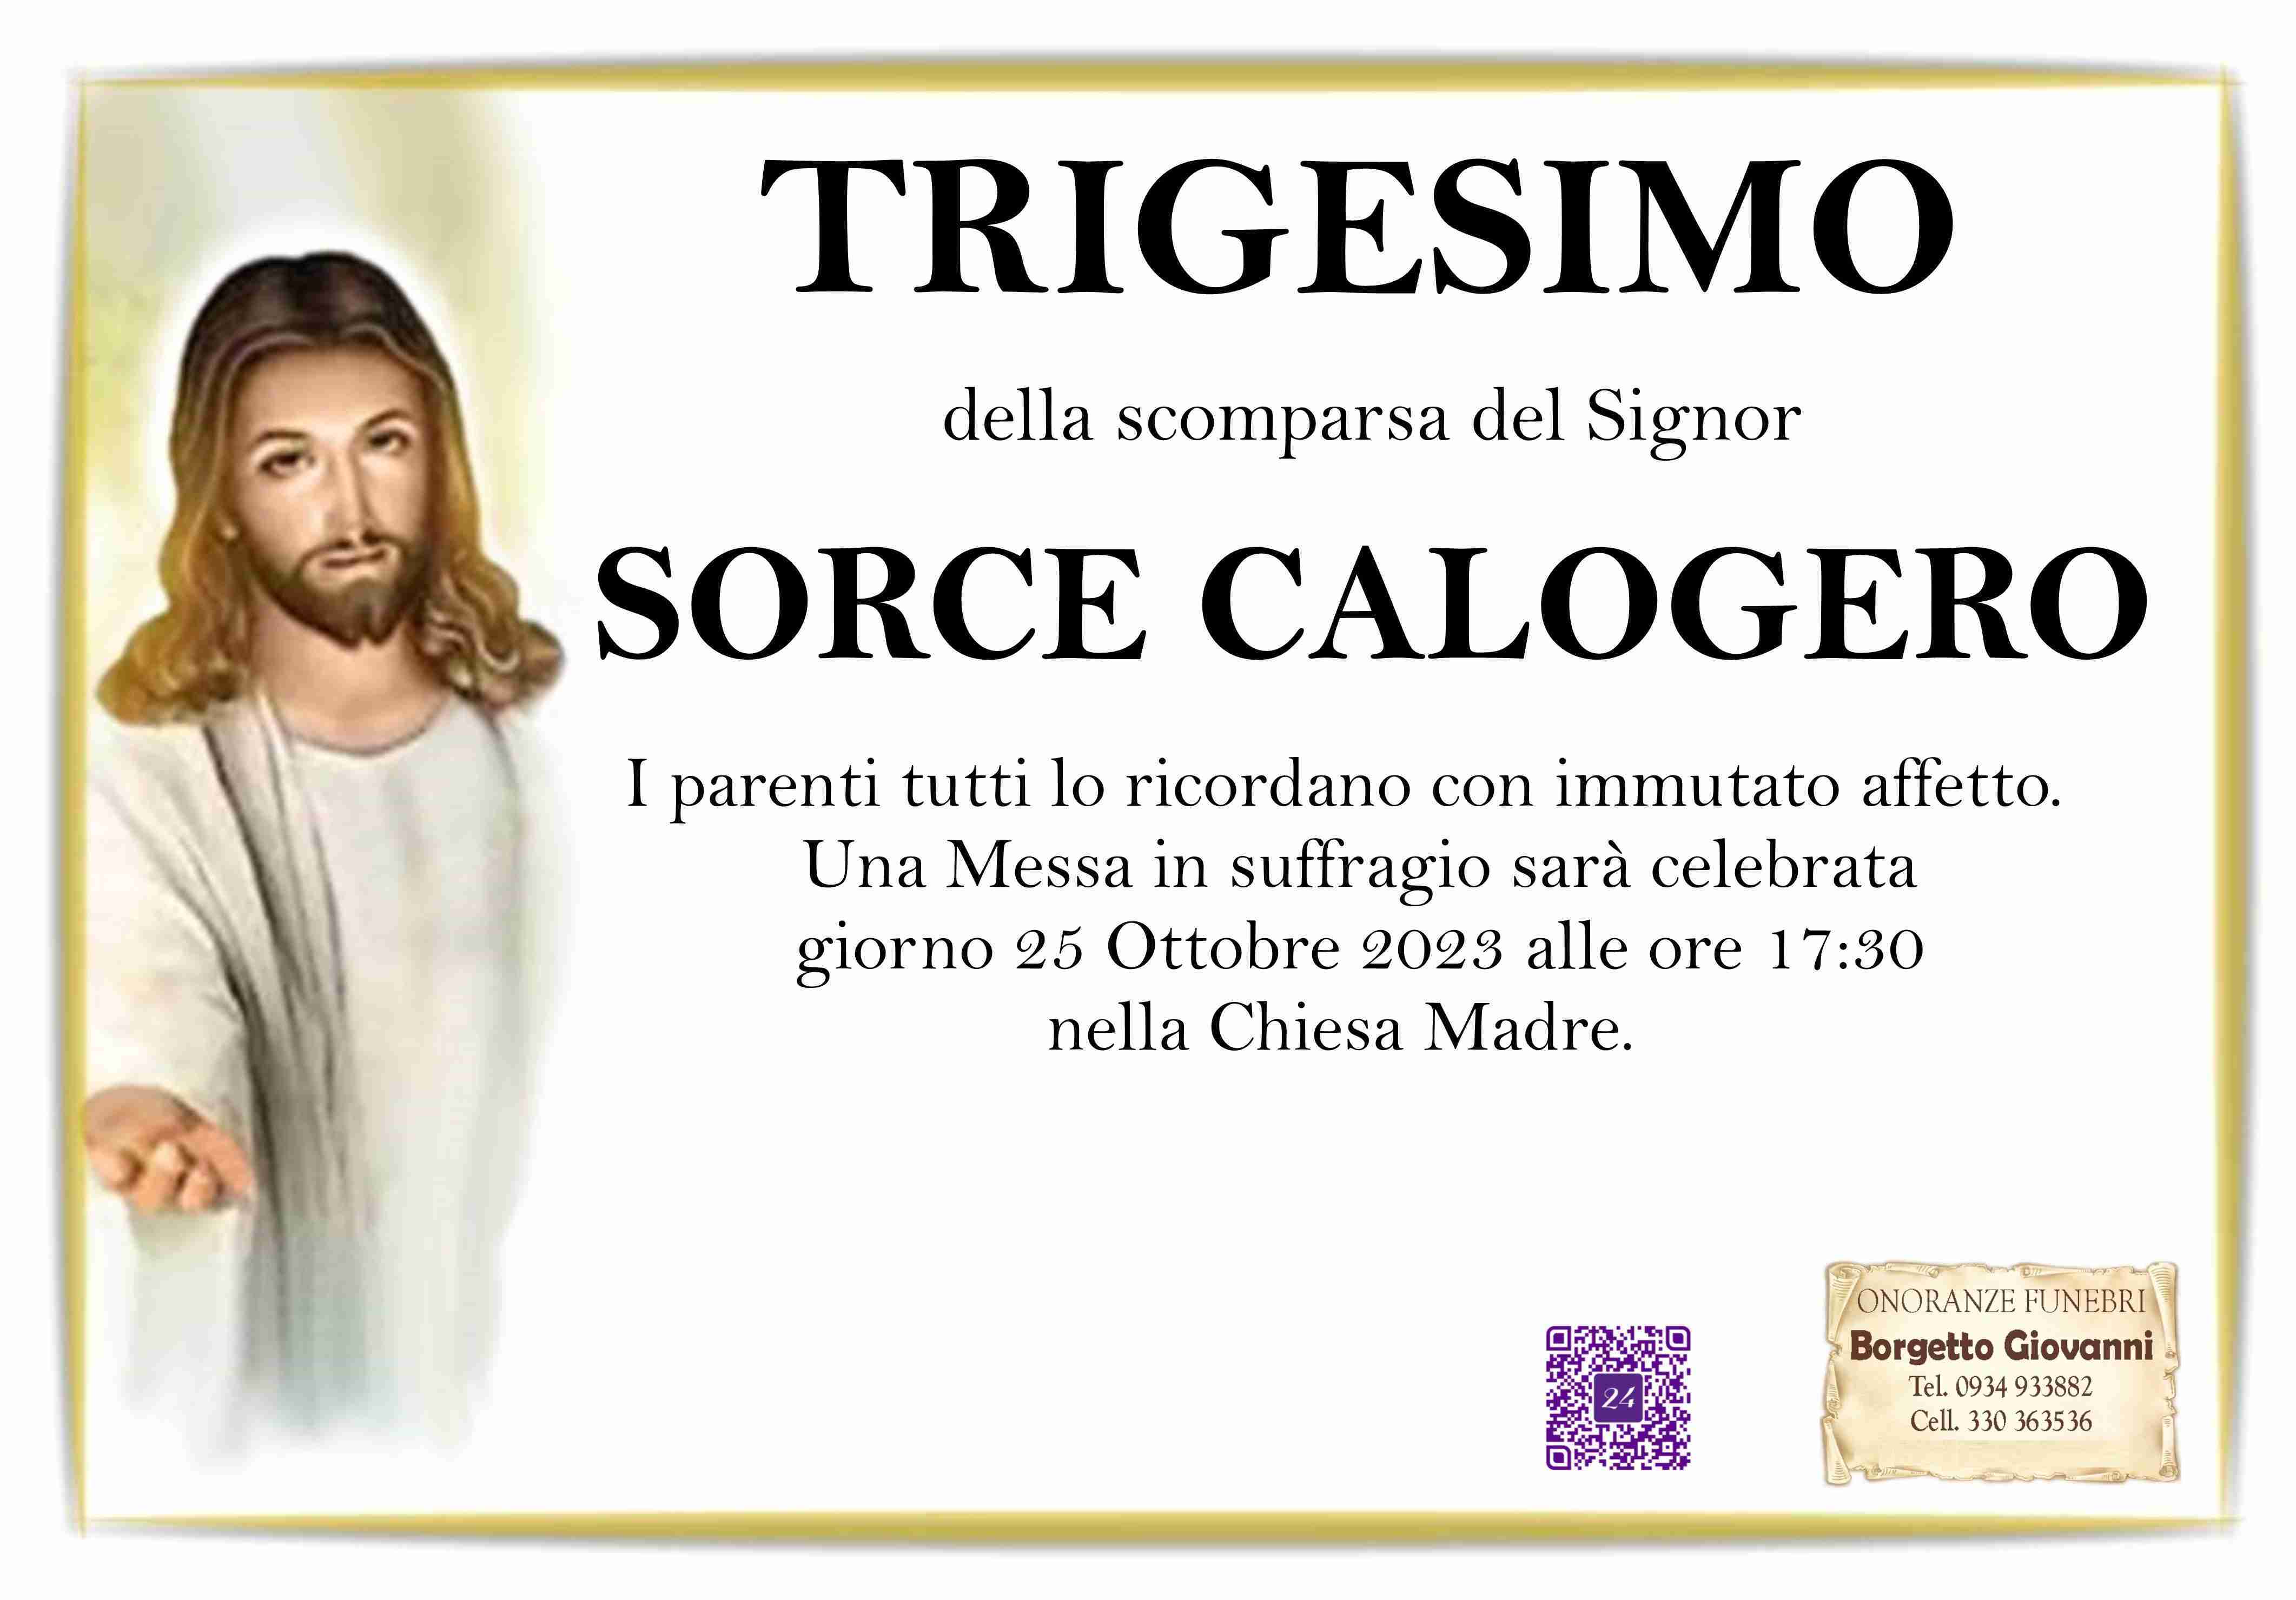 Calogero Sorce